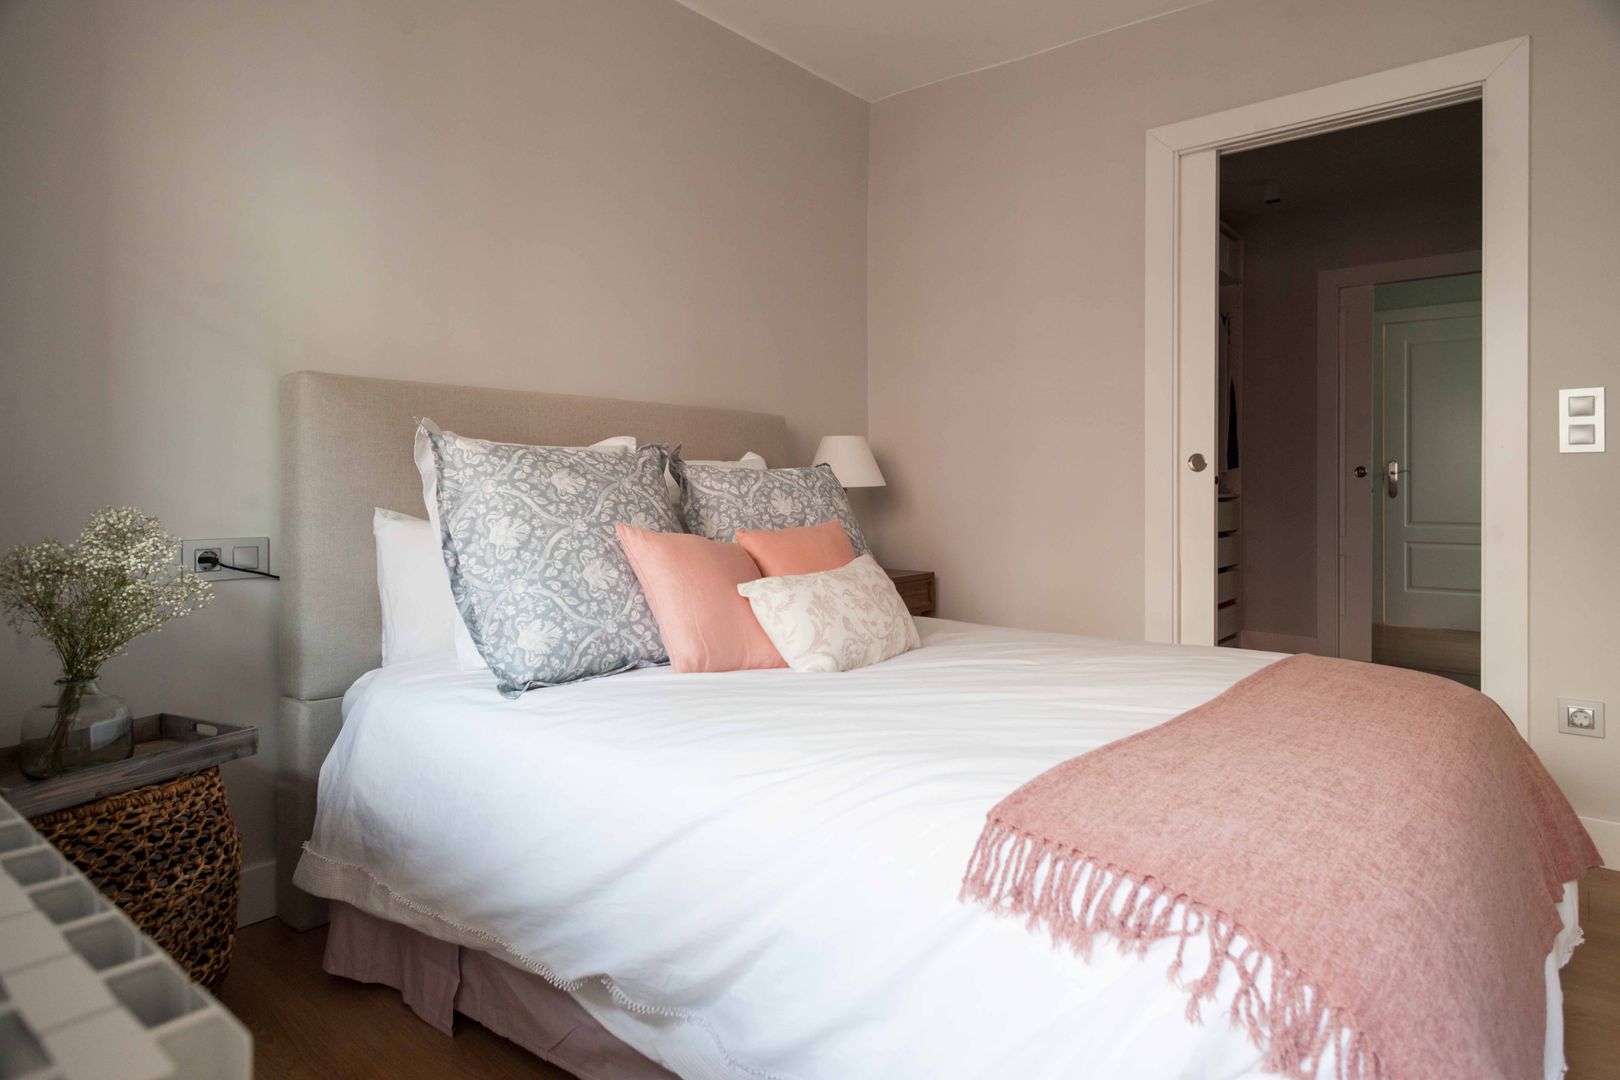 Un pasillo donde vivir, Espacio Sutil Espacio Sutil Scandinavian style bedroom